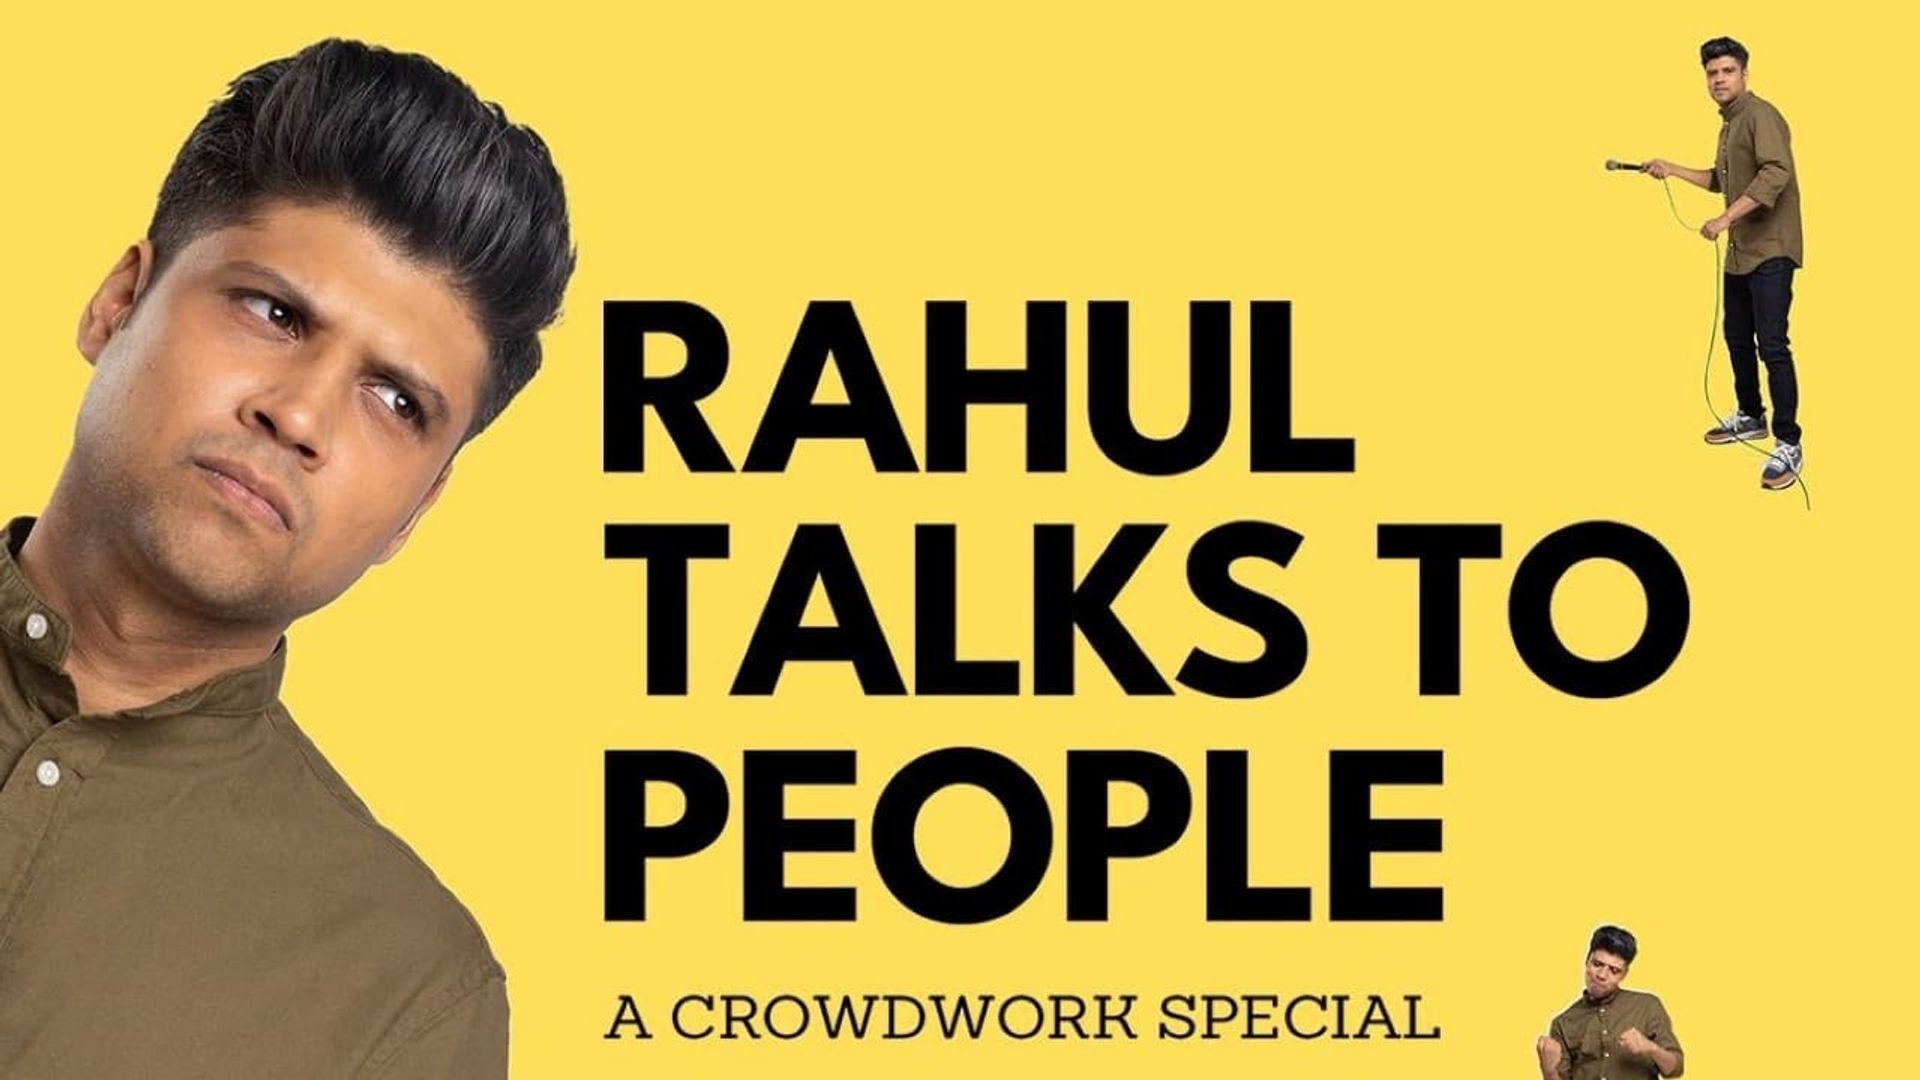 Rahul Talks to People background